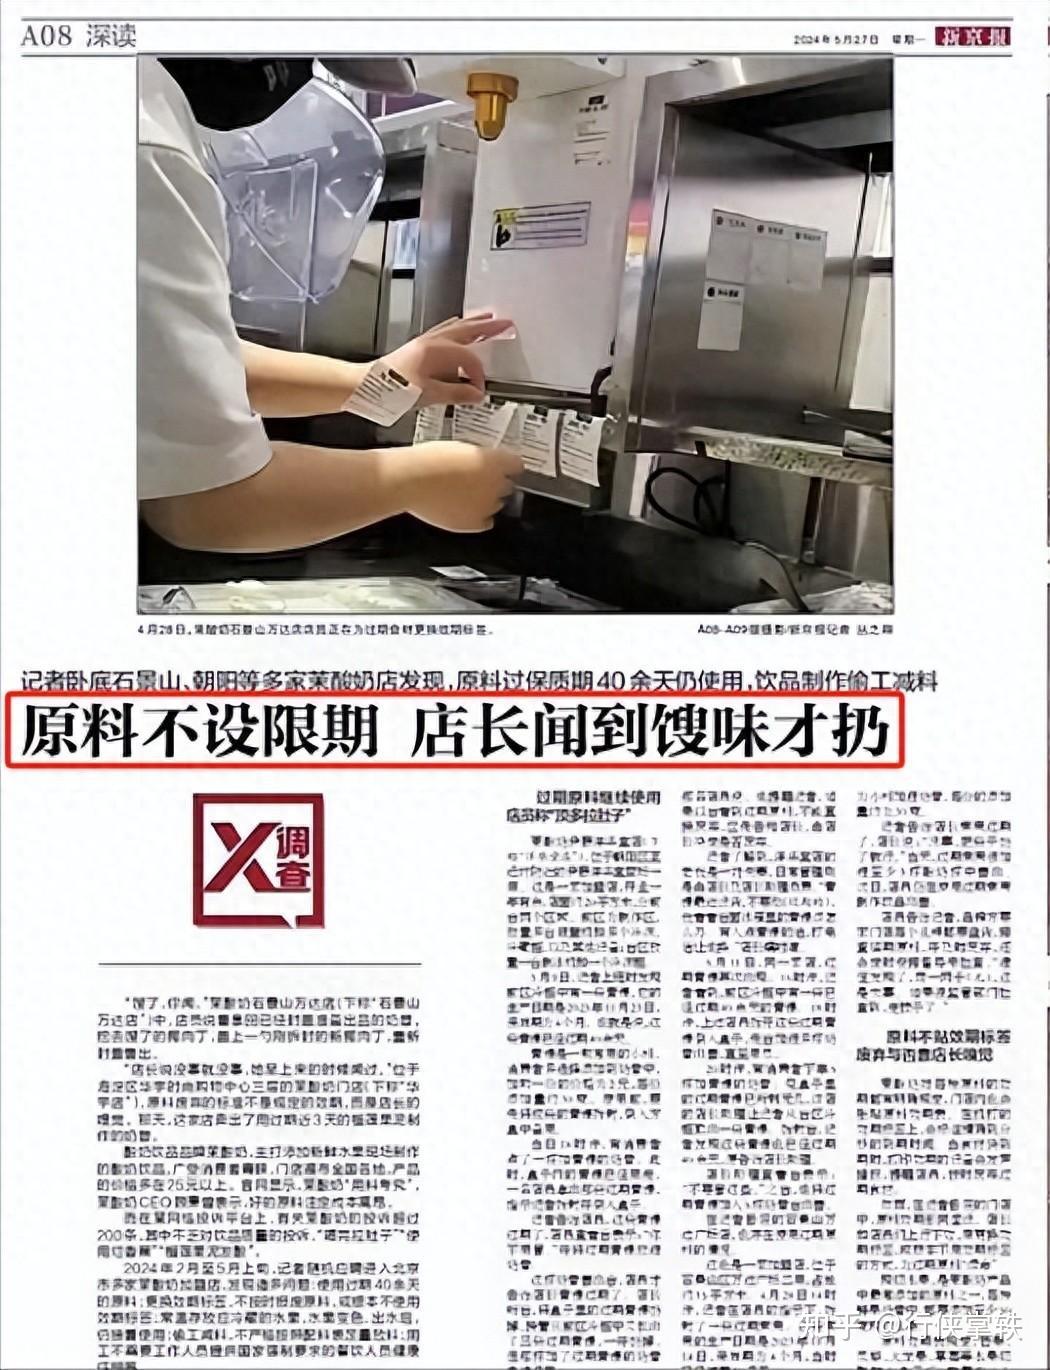 茉酸奶被曝使用过期原料事件后续:上海总部道歉,多家门店被立案调查!